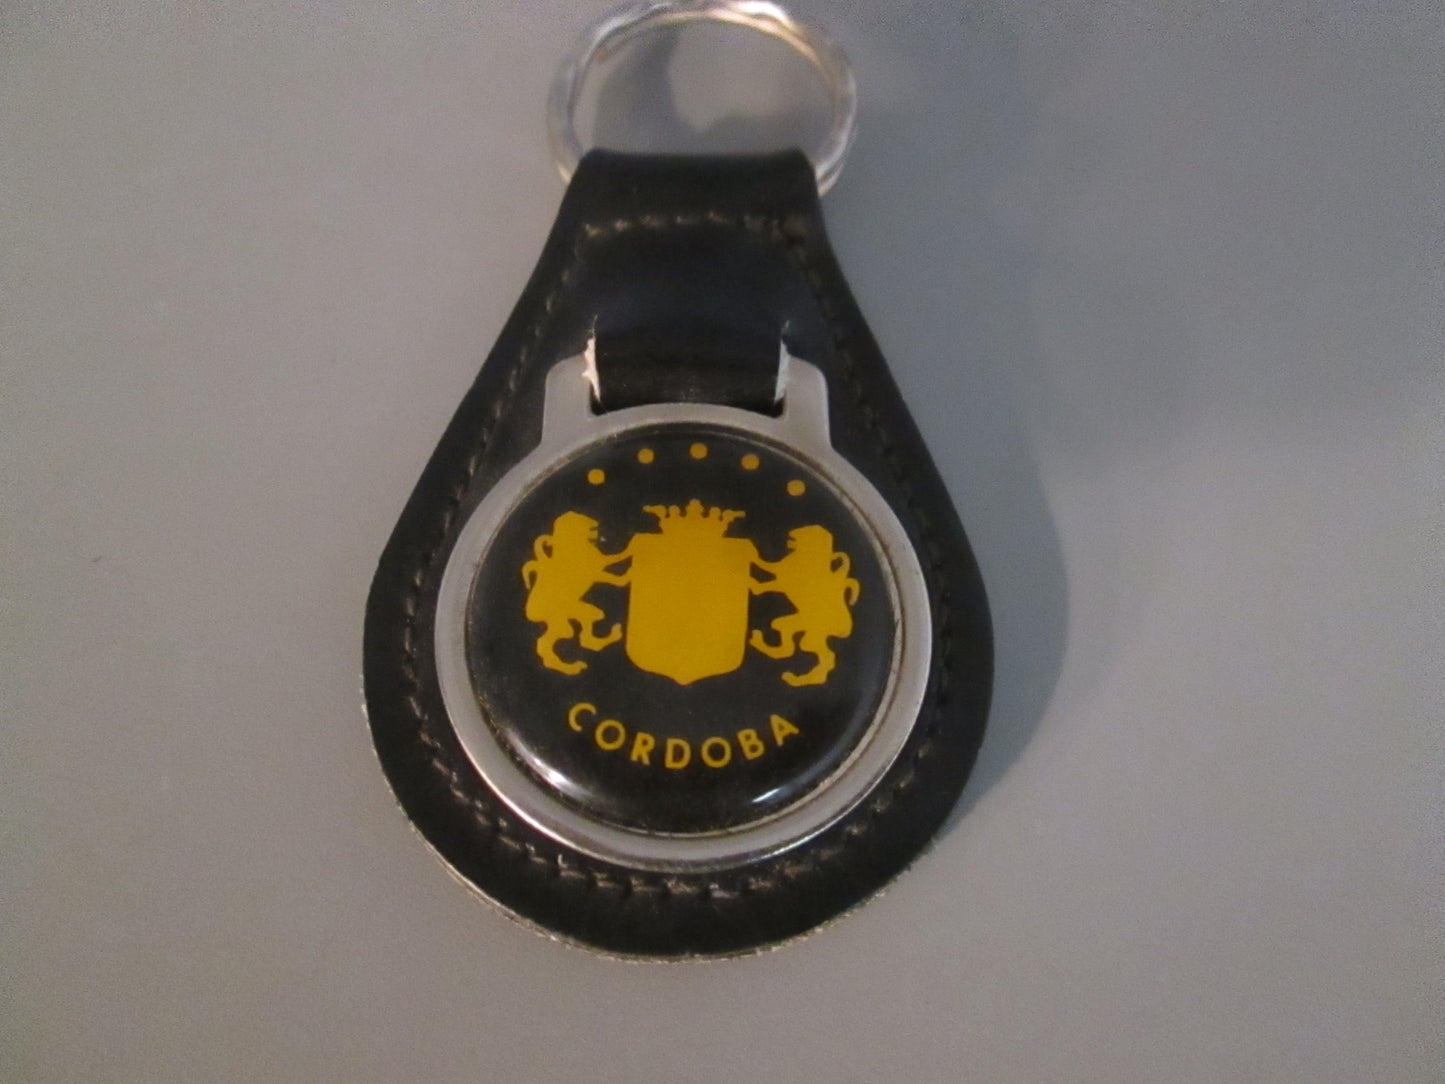 Vintage Leather Fob Key Holder for Dodge Cordoba